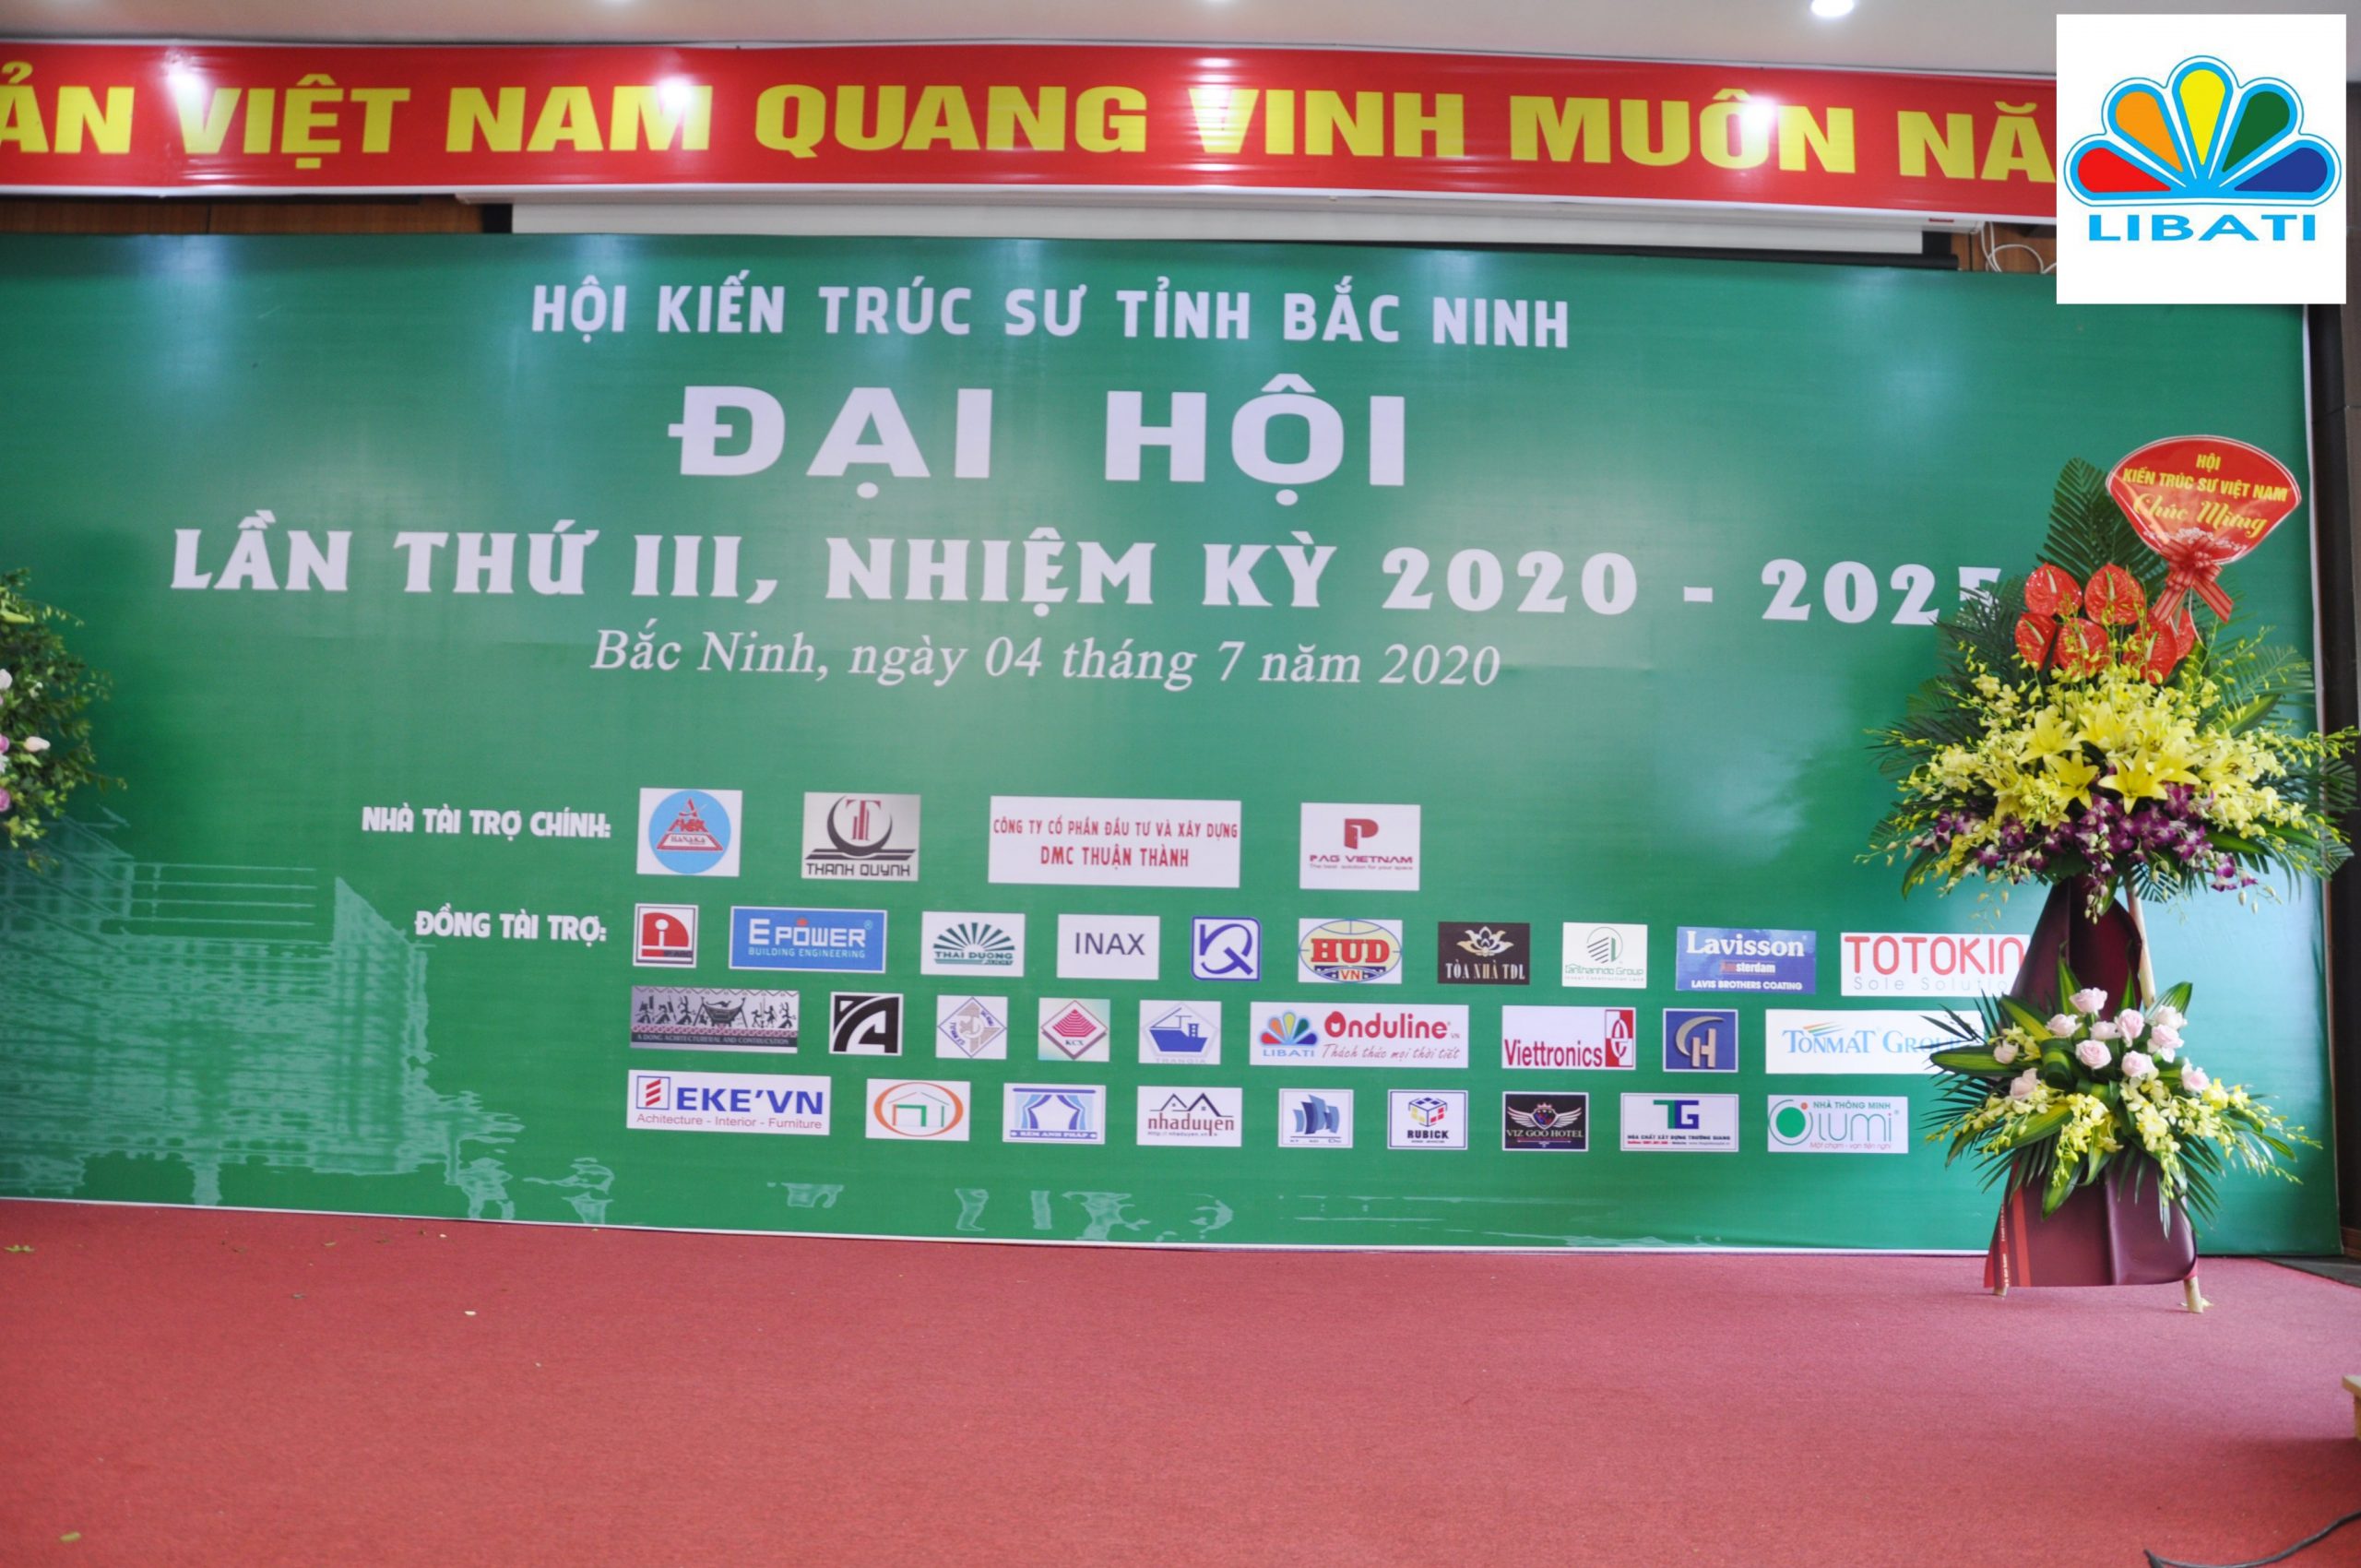 Onduline đồng hành cùng Hội kiến trúc sư tỉnh Bắc Ninh.